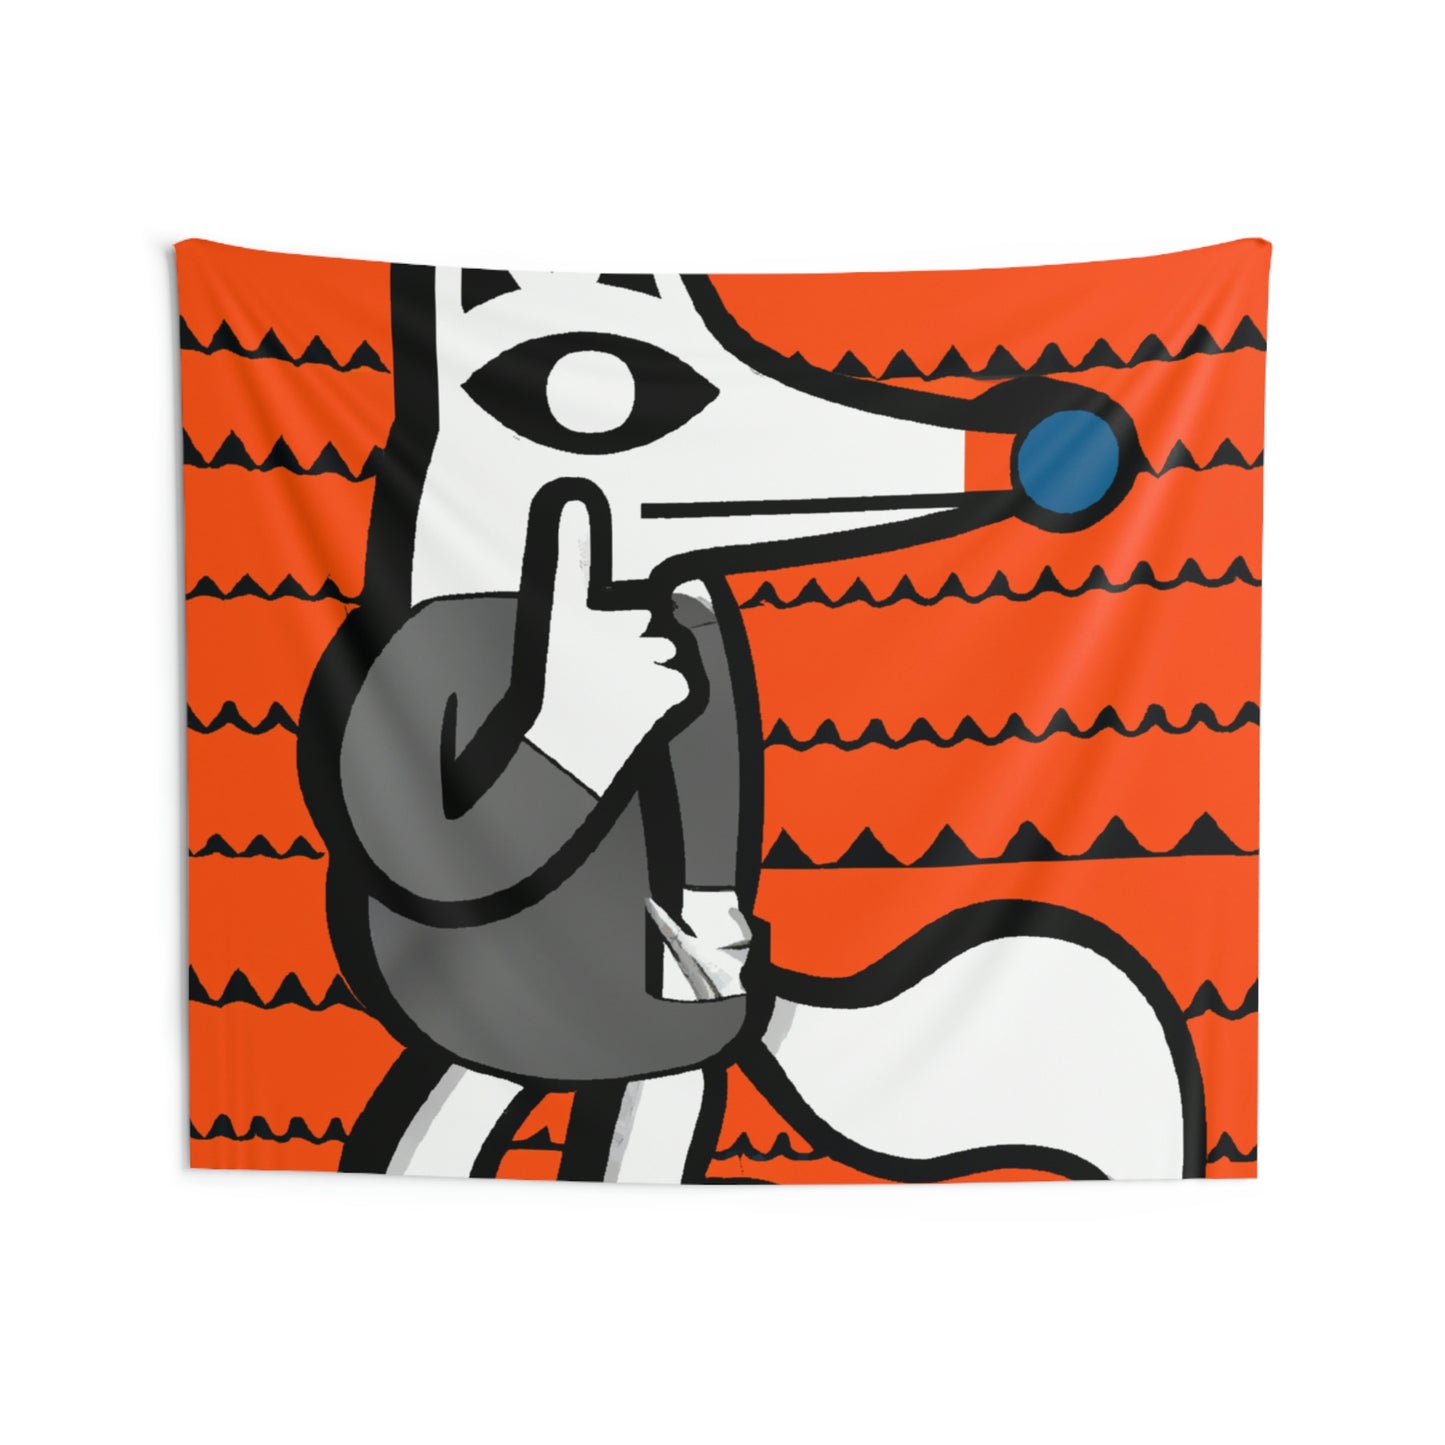 Das gestohlene Geheimnis des Fuchses – Die Alien-Wandteppiche